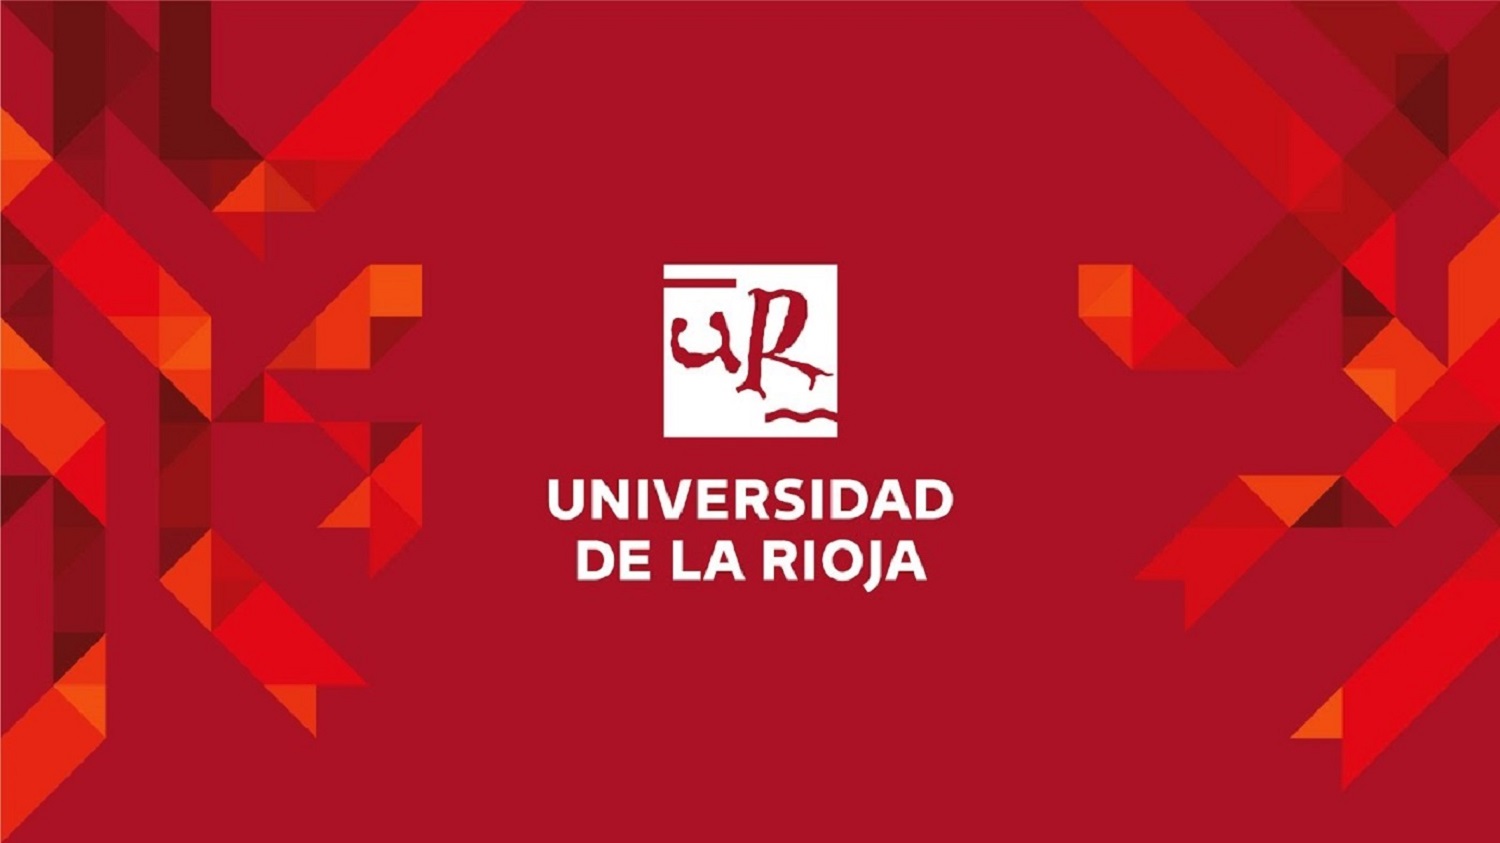 西班牙拉里奥哈大学 logo